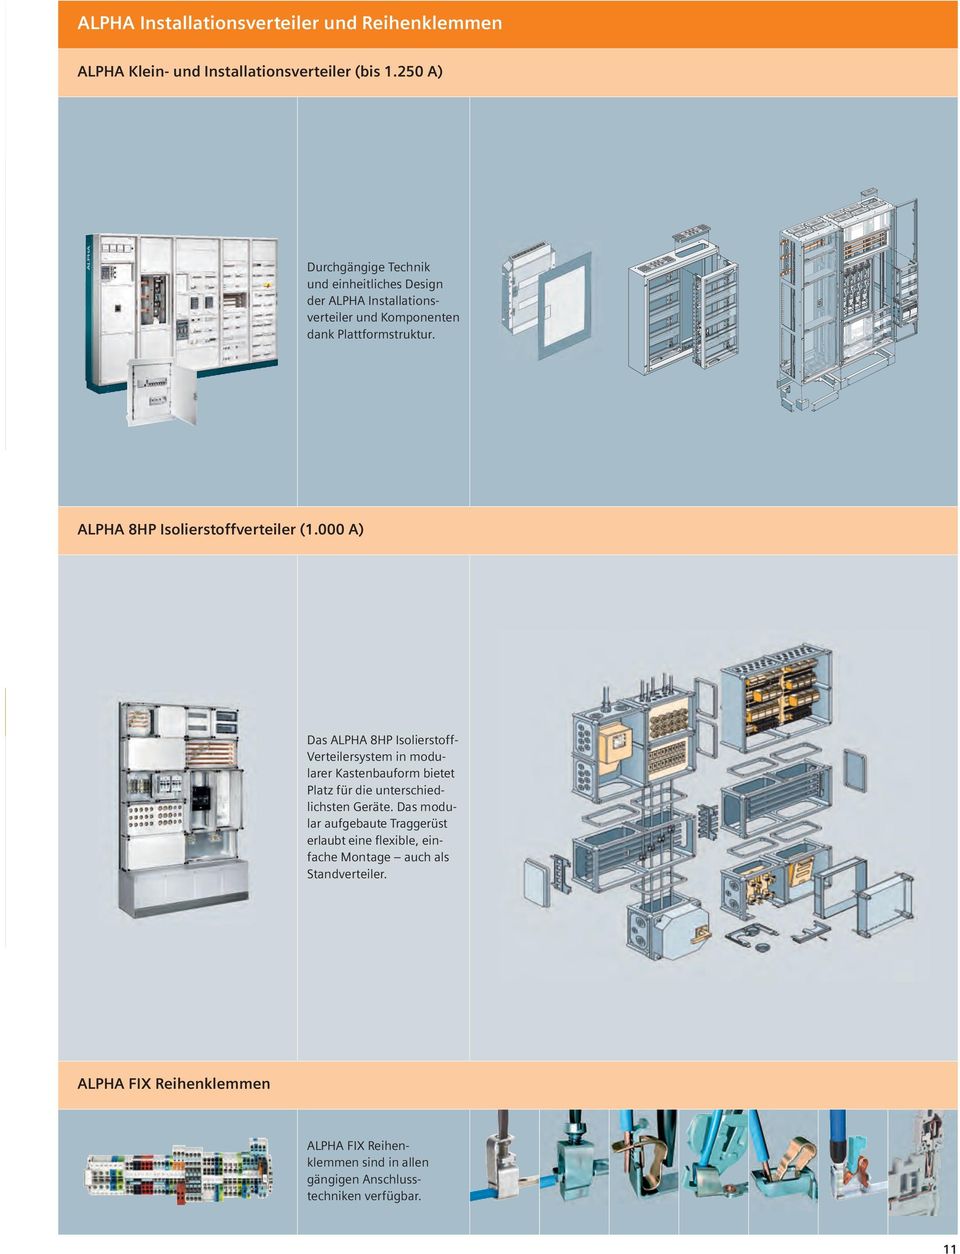 000 A) Das ALPHA 8HP IsolierstoffVerteilersystem in modularer Kastenbauform bietet Platz für die unterschiedlichsten Geräte.